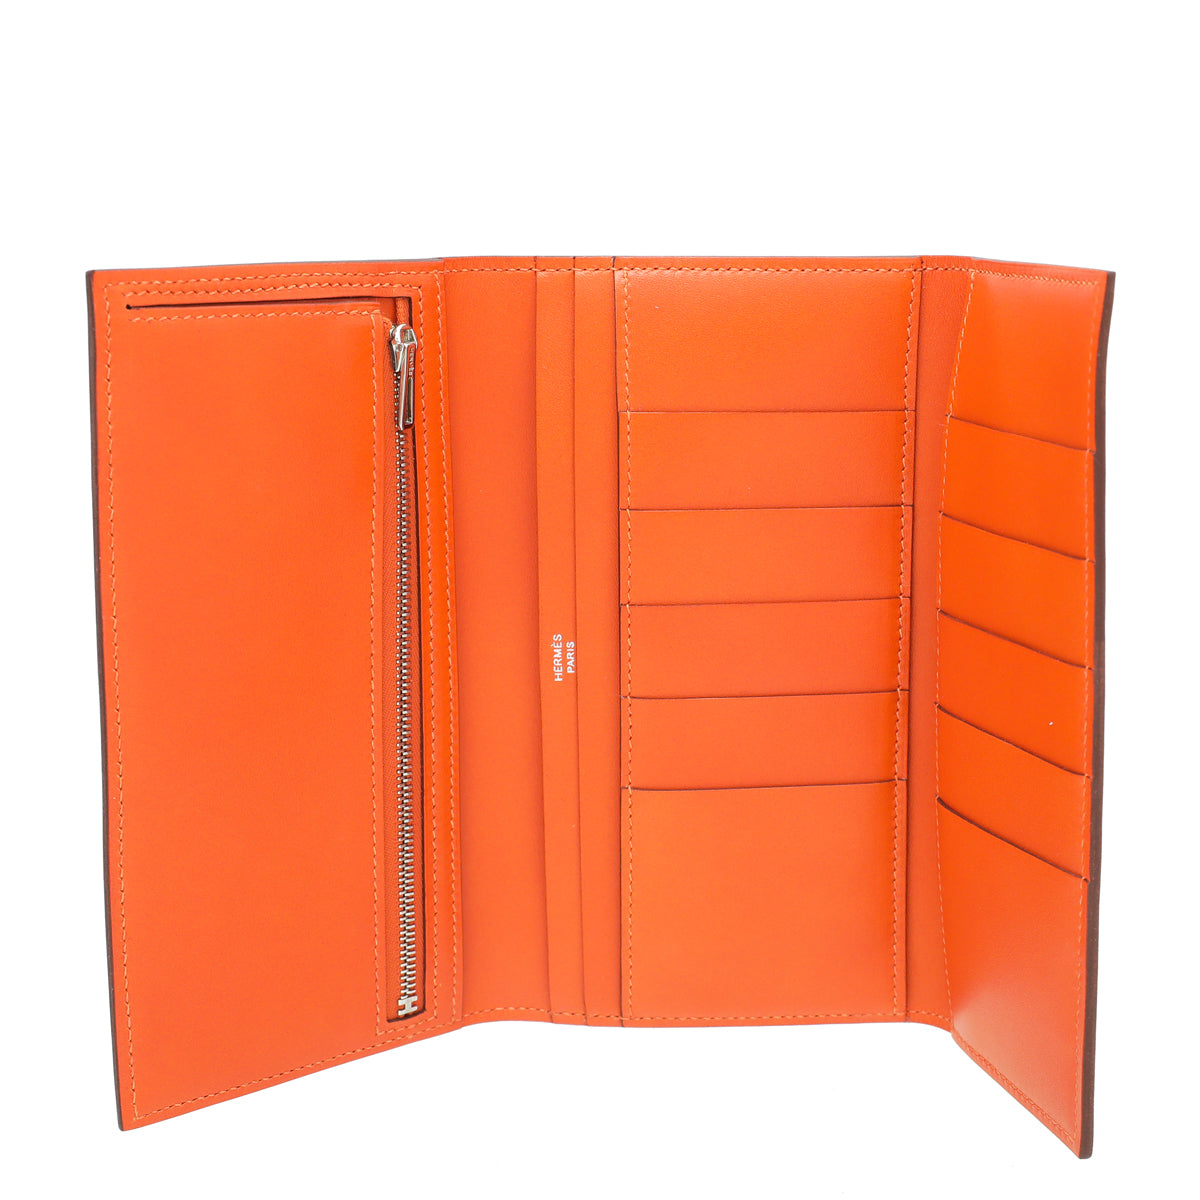 Hermes Orange Bearn Wallet